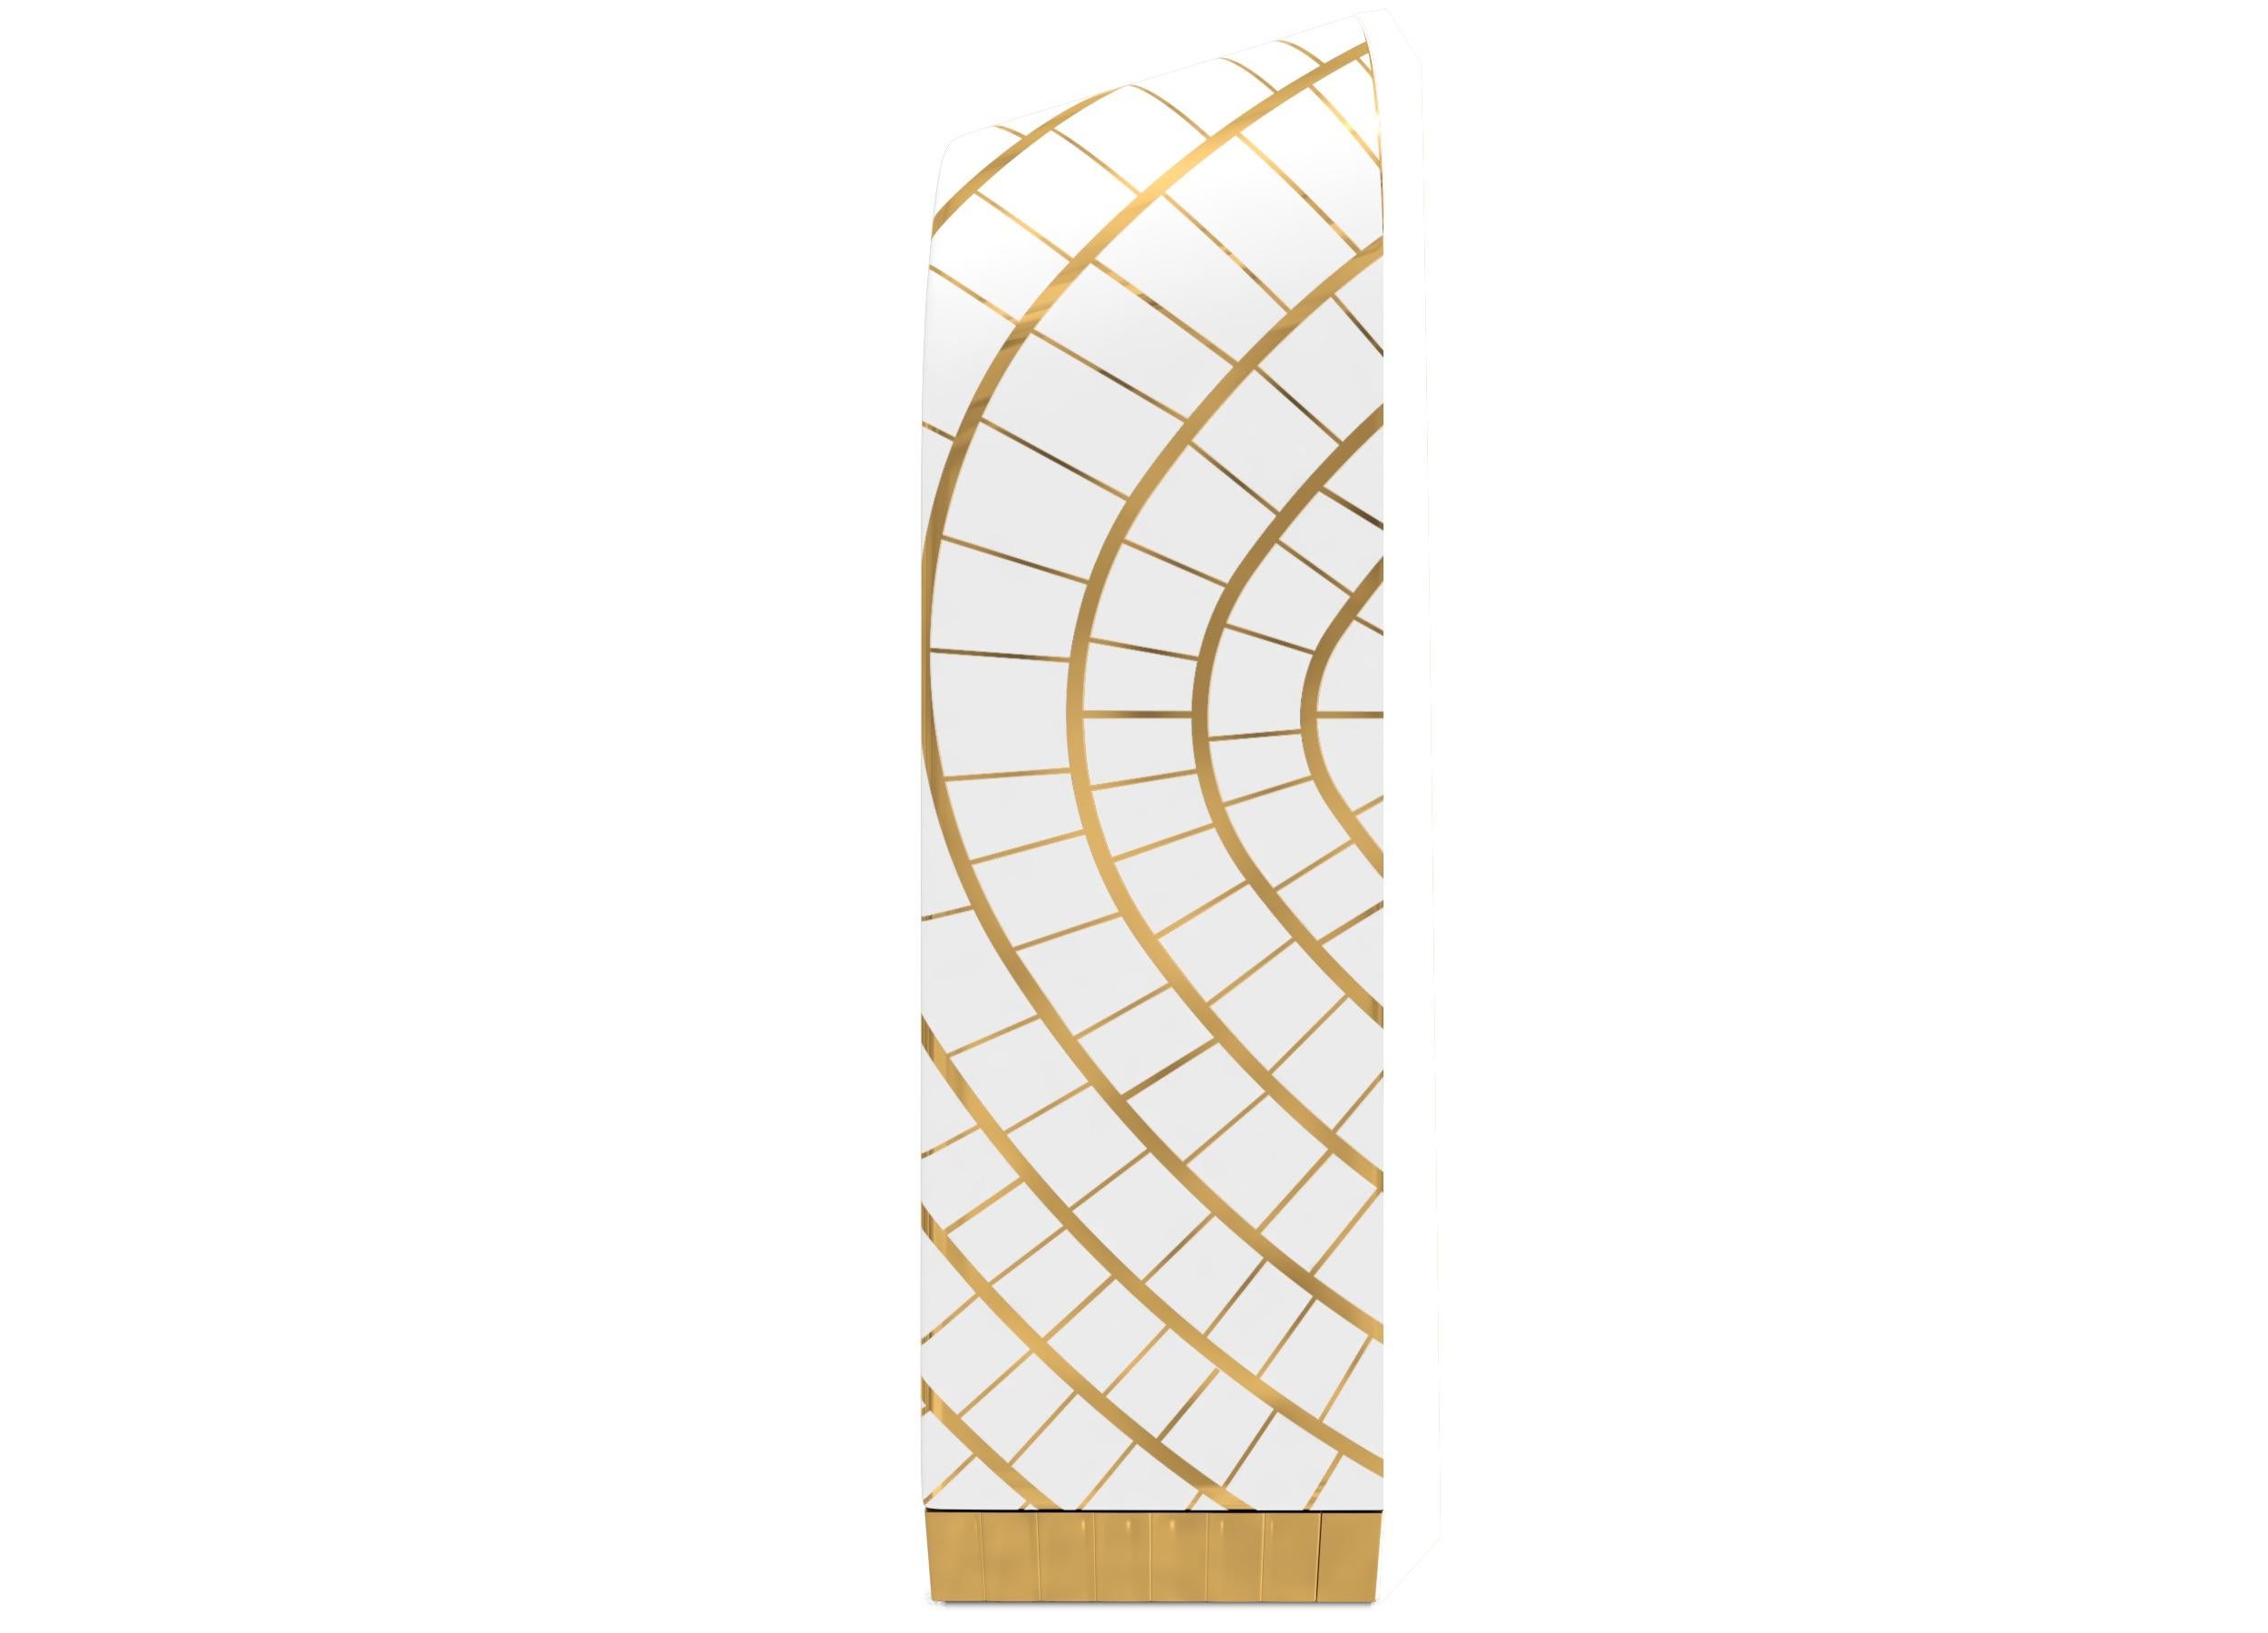 Lulu Bar Cabinet with Brass Inlay von Matteo Cibic ist ein äußerst luxuriöser Schrank mit einer Augenlippe aus Messing in der Mitte, umgeben von einem elliptischen Netz aus Messing und Harz. Das Innere des Schrankes ist vollständig mit Messing